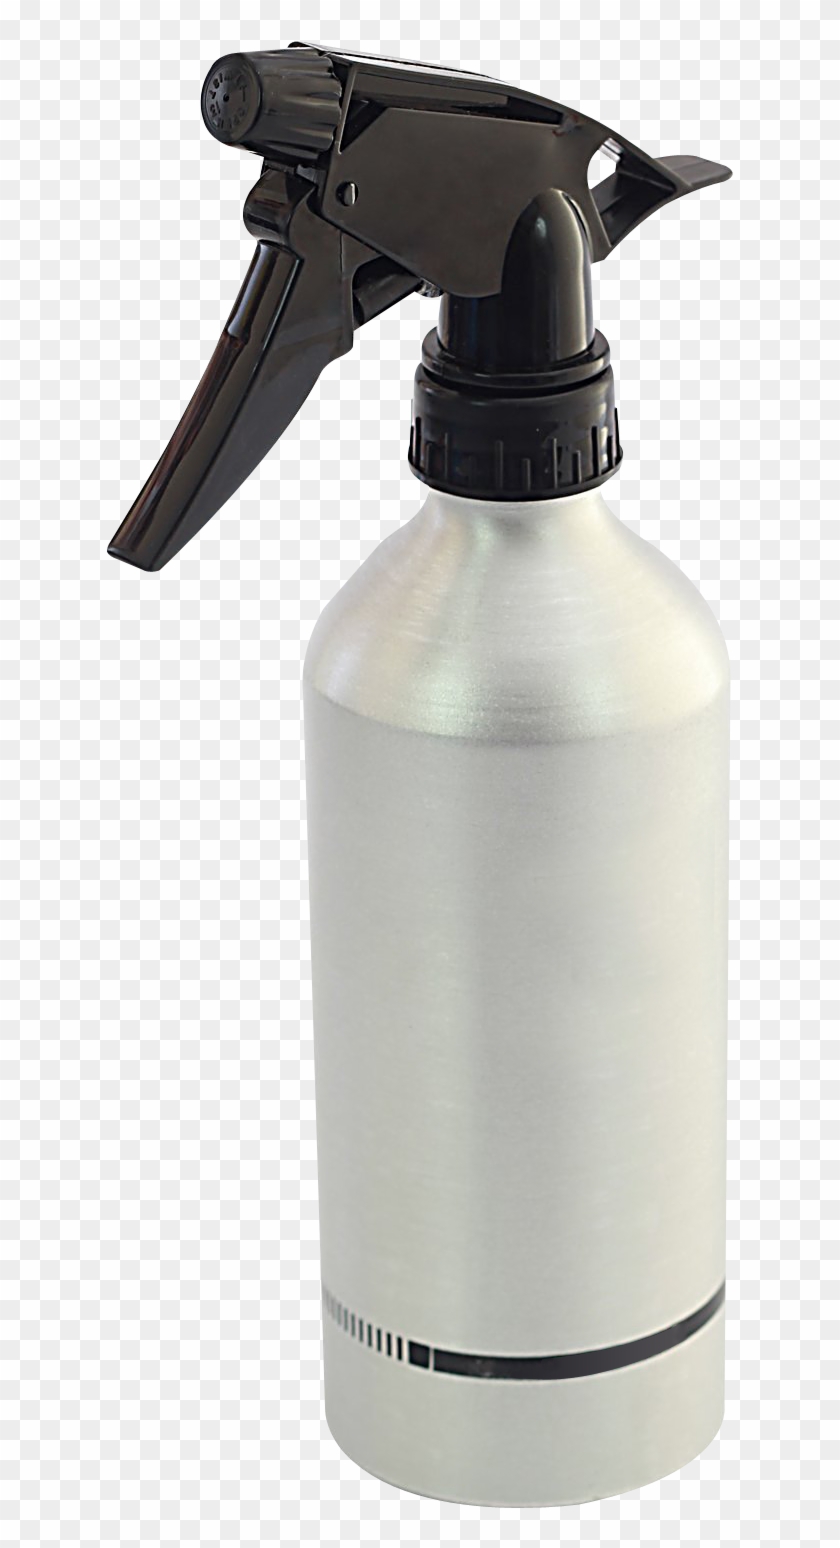 Spray Bottle Png Image - Transparent Background Spray Bottle Transparent Clipart #573690